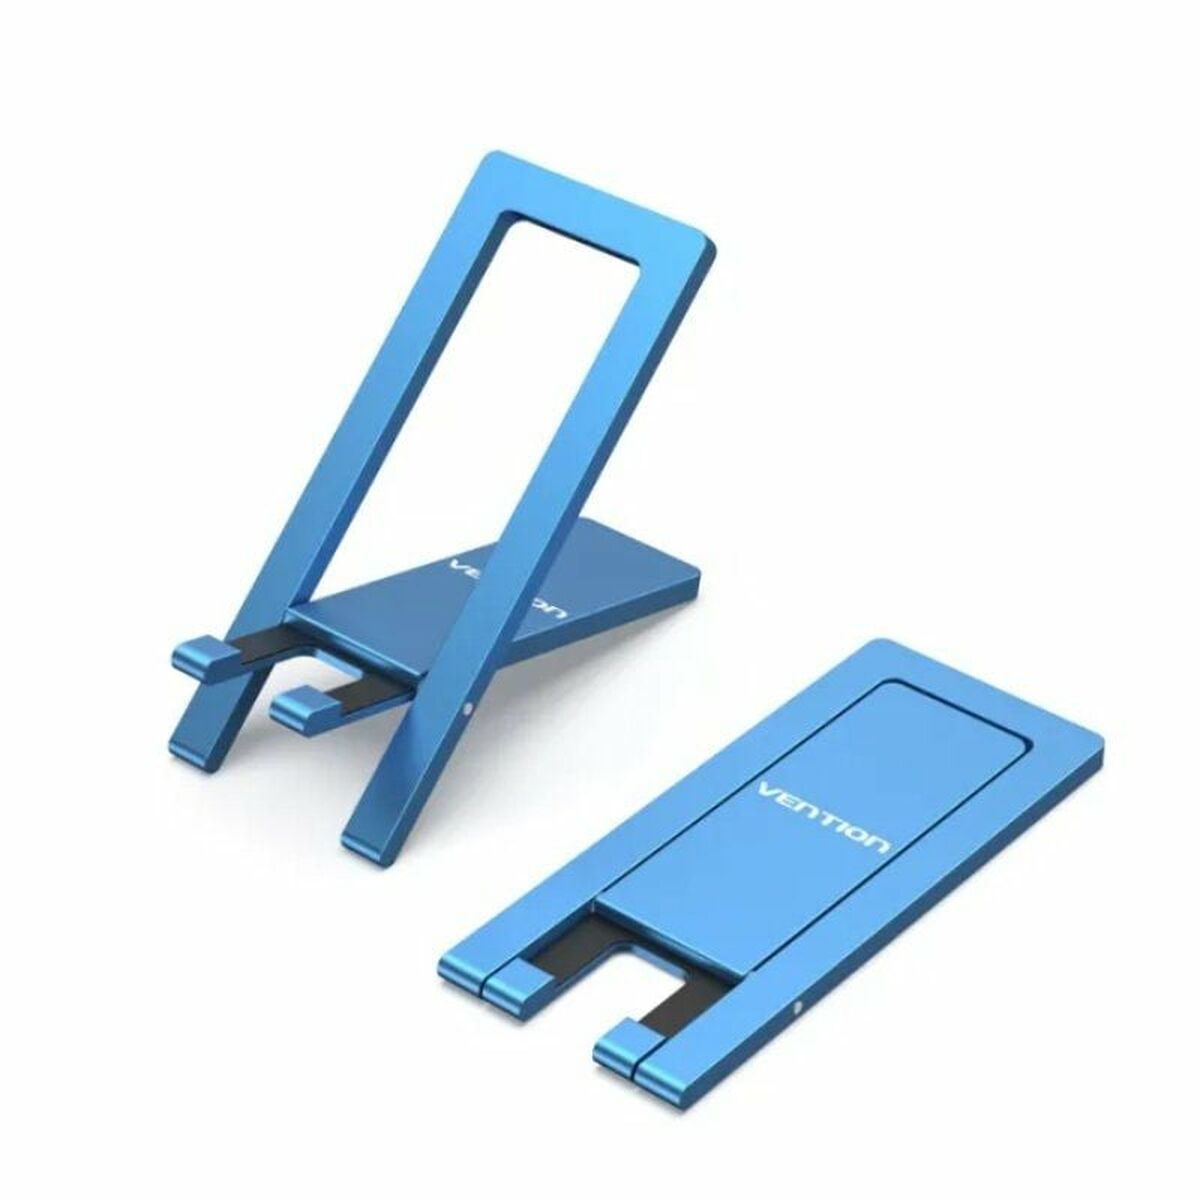 Support pour téléphone portable ou tablette Vention KCZL0 Bleu